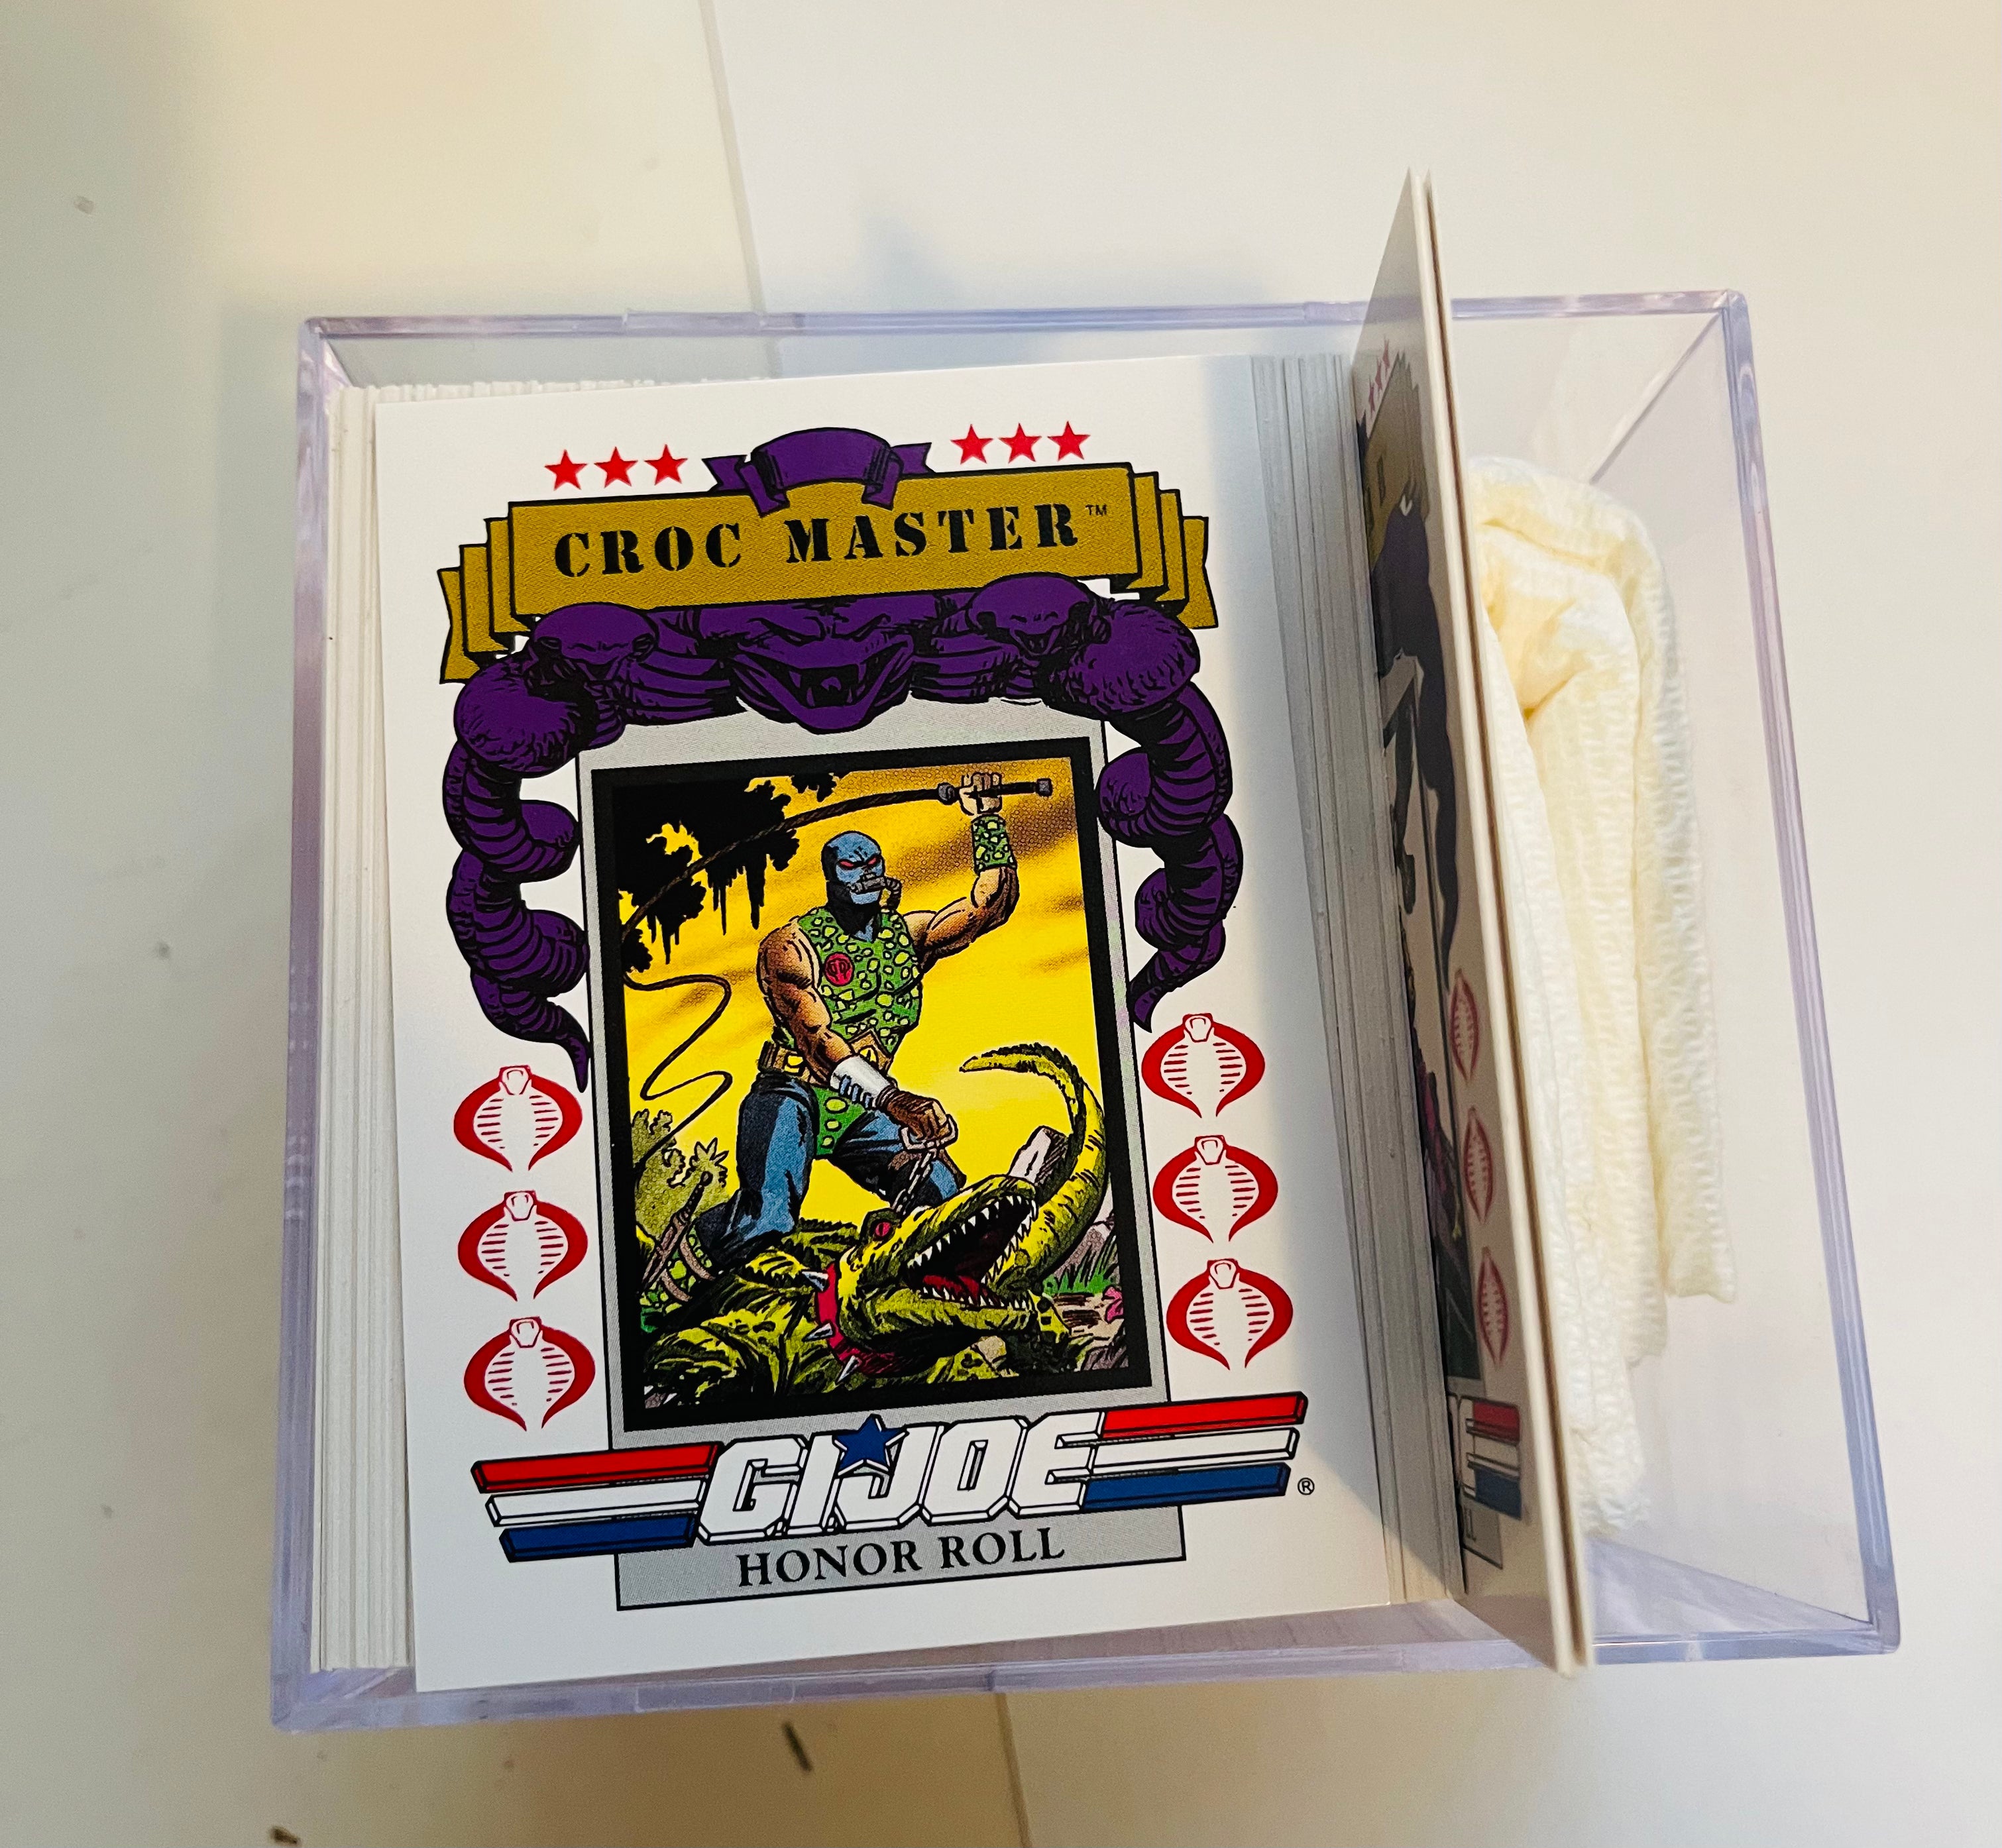 G.I. Joe complete cards set 1991